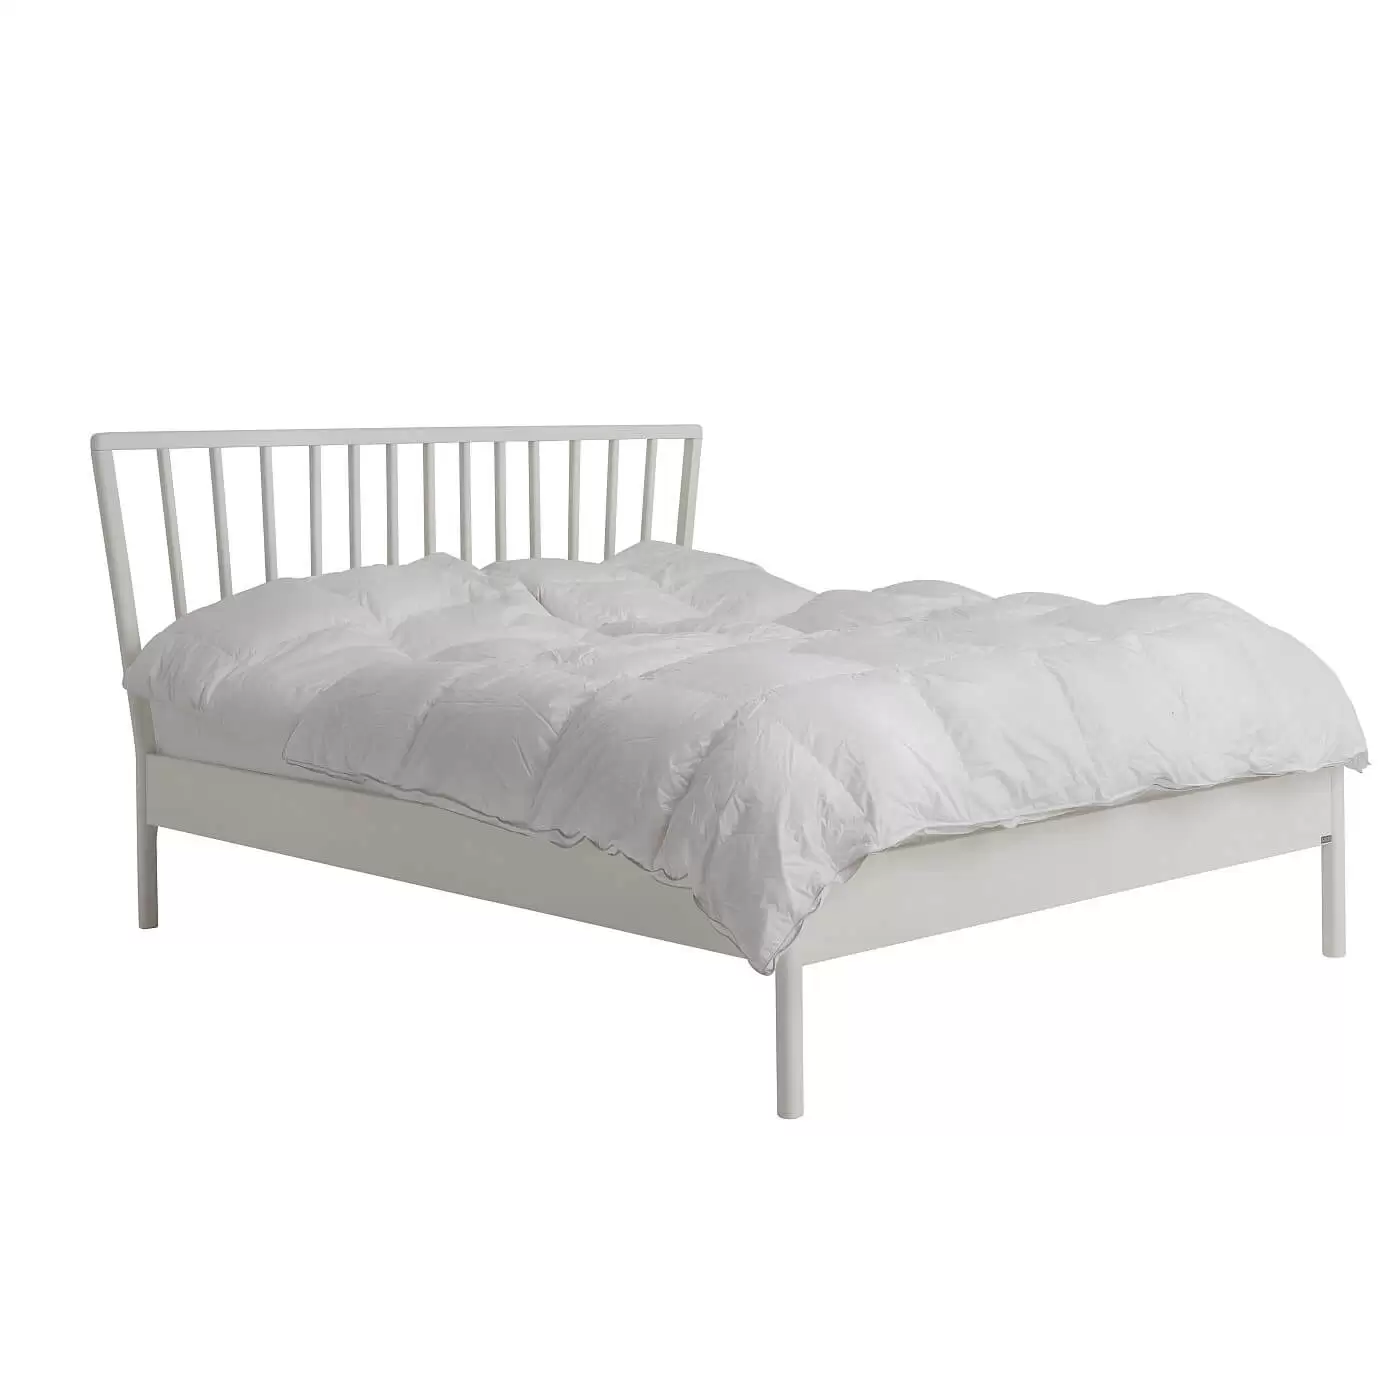 Łóżko skandynawskie białe MELODIA. Widoczne w całości łóżko do sypialni z drewnianym białym wysokim ażurowym szczytem. Na łóżku 160x200 na wysokich nóżkach leżąca biała kołdra